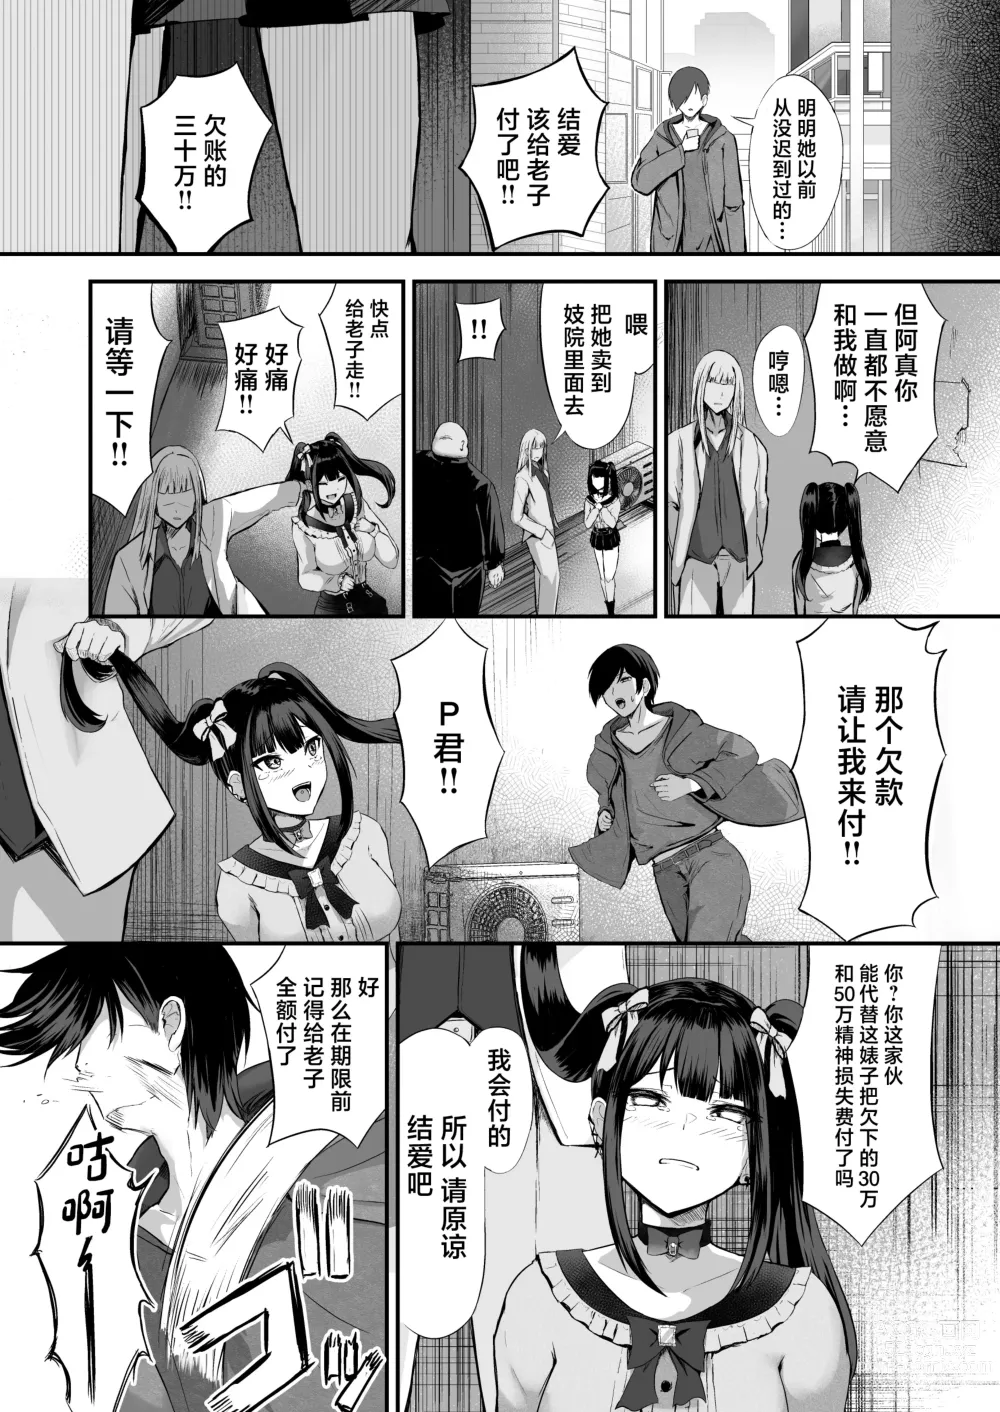 Page 17 of doujinshi Jiraiinukei Kanojo #Kimi to Tsunagaritai Jirai de Inukei de Juujun na Kimi dake no Pet